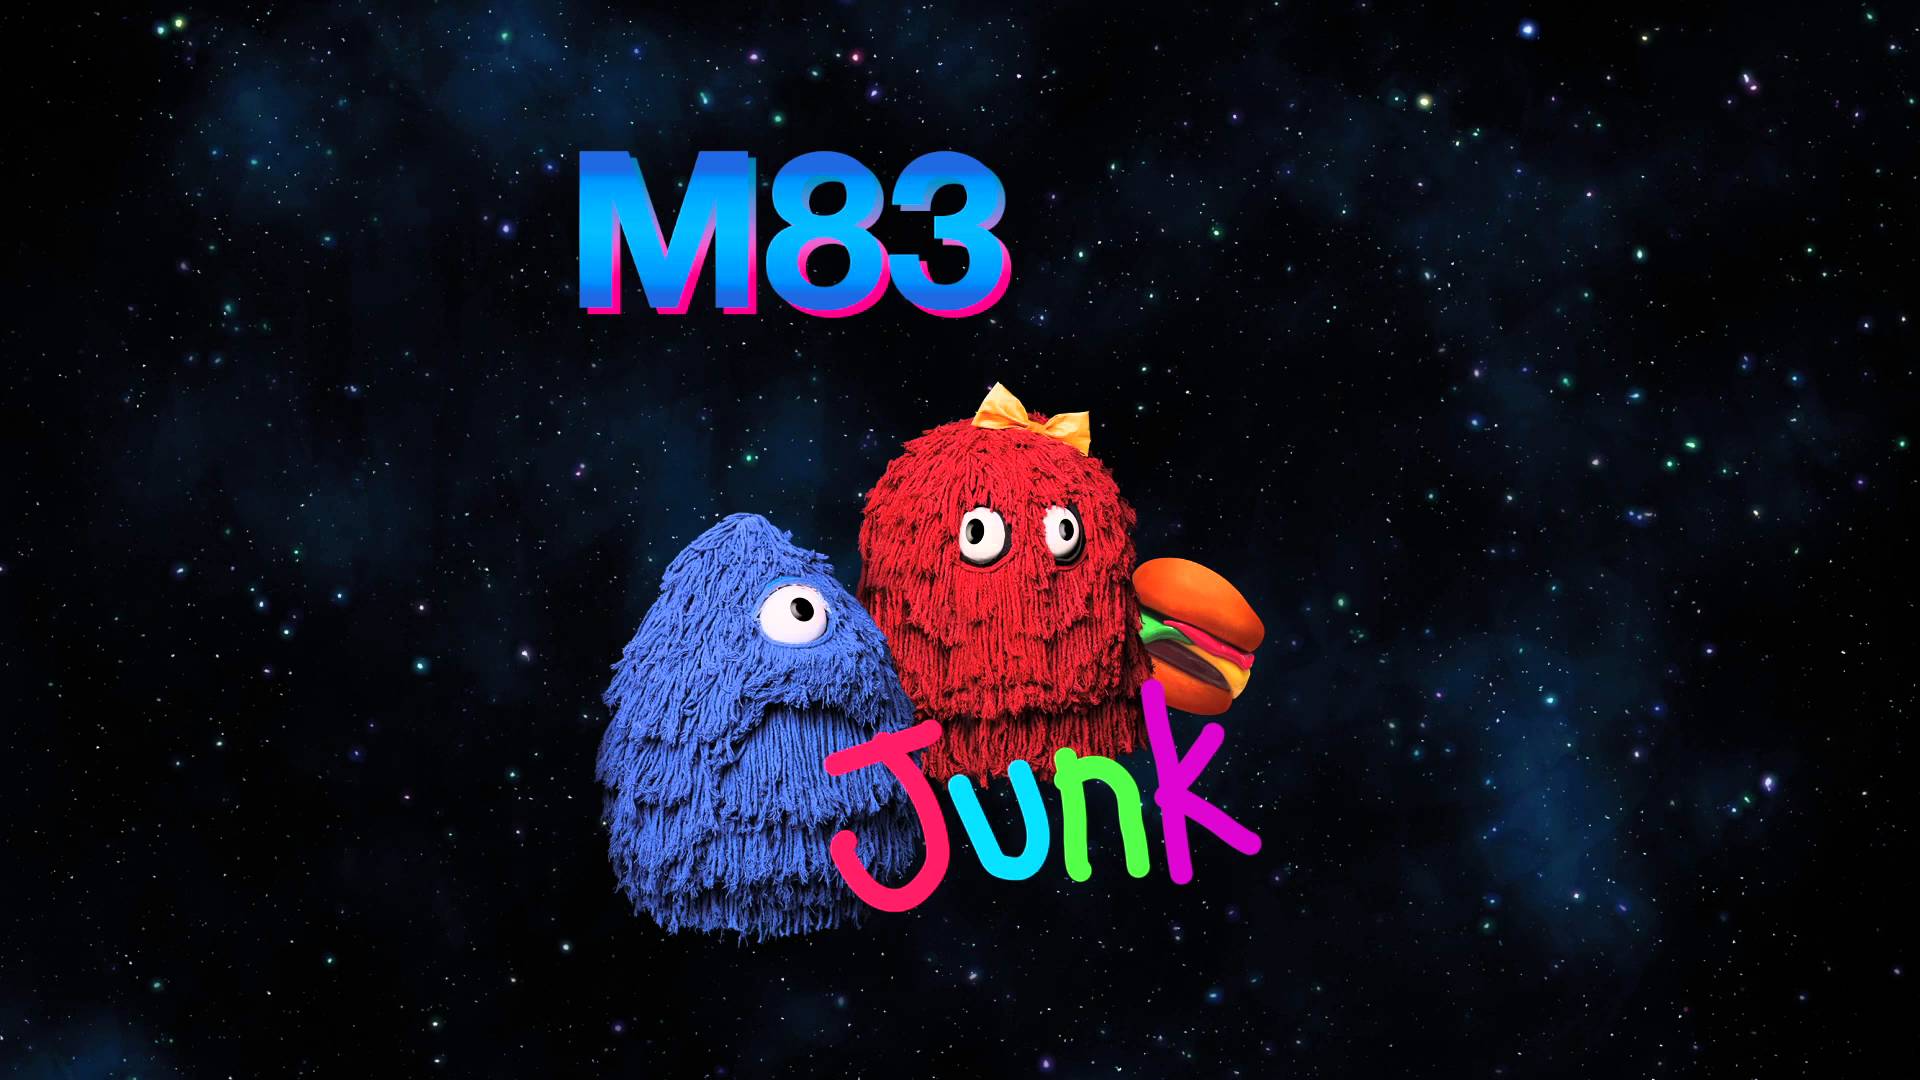 Album Re Junk By M83